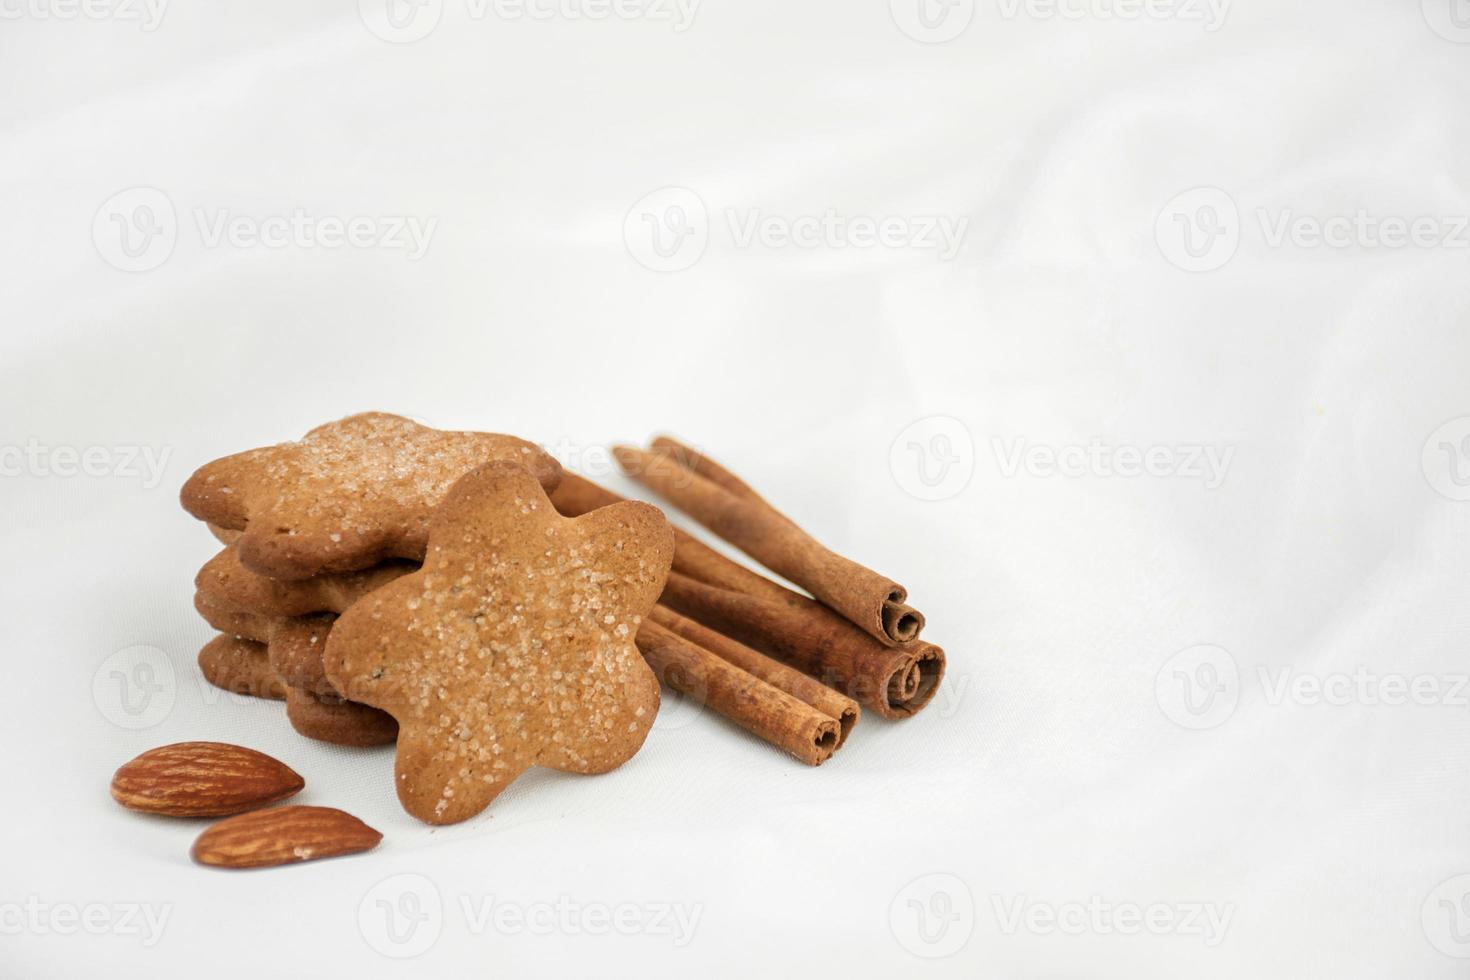 galletas de jengibre con azúcar, canela y almendras sobre un fondo blanco borroso. receta navideña foto